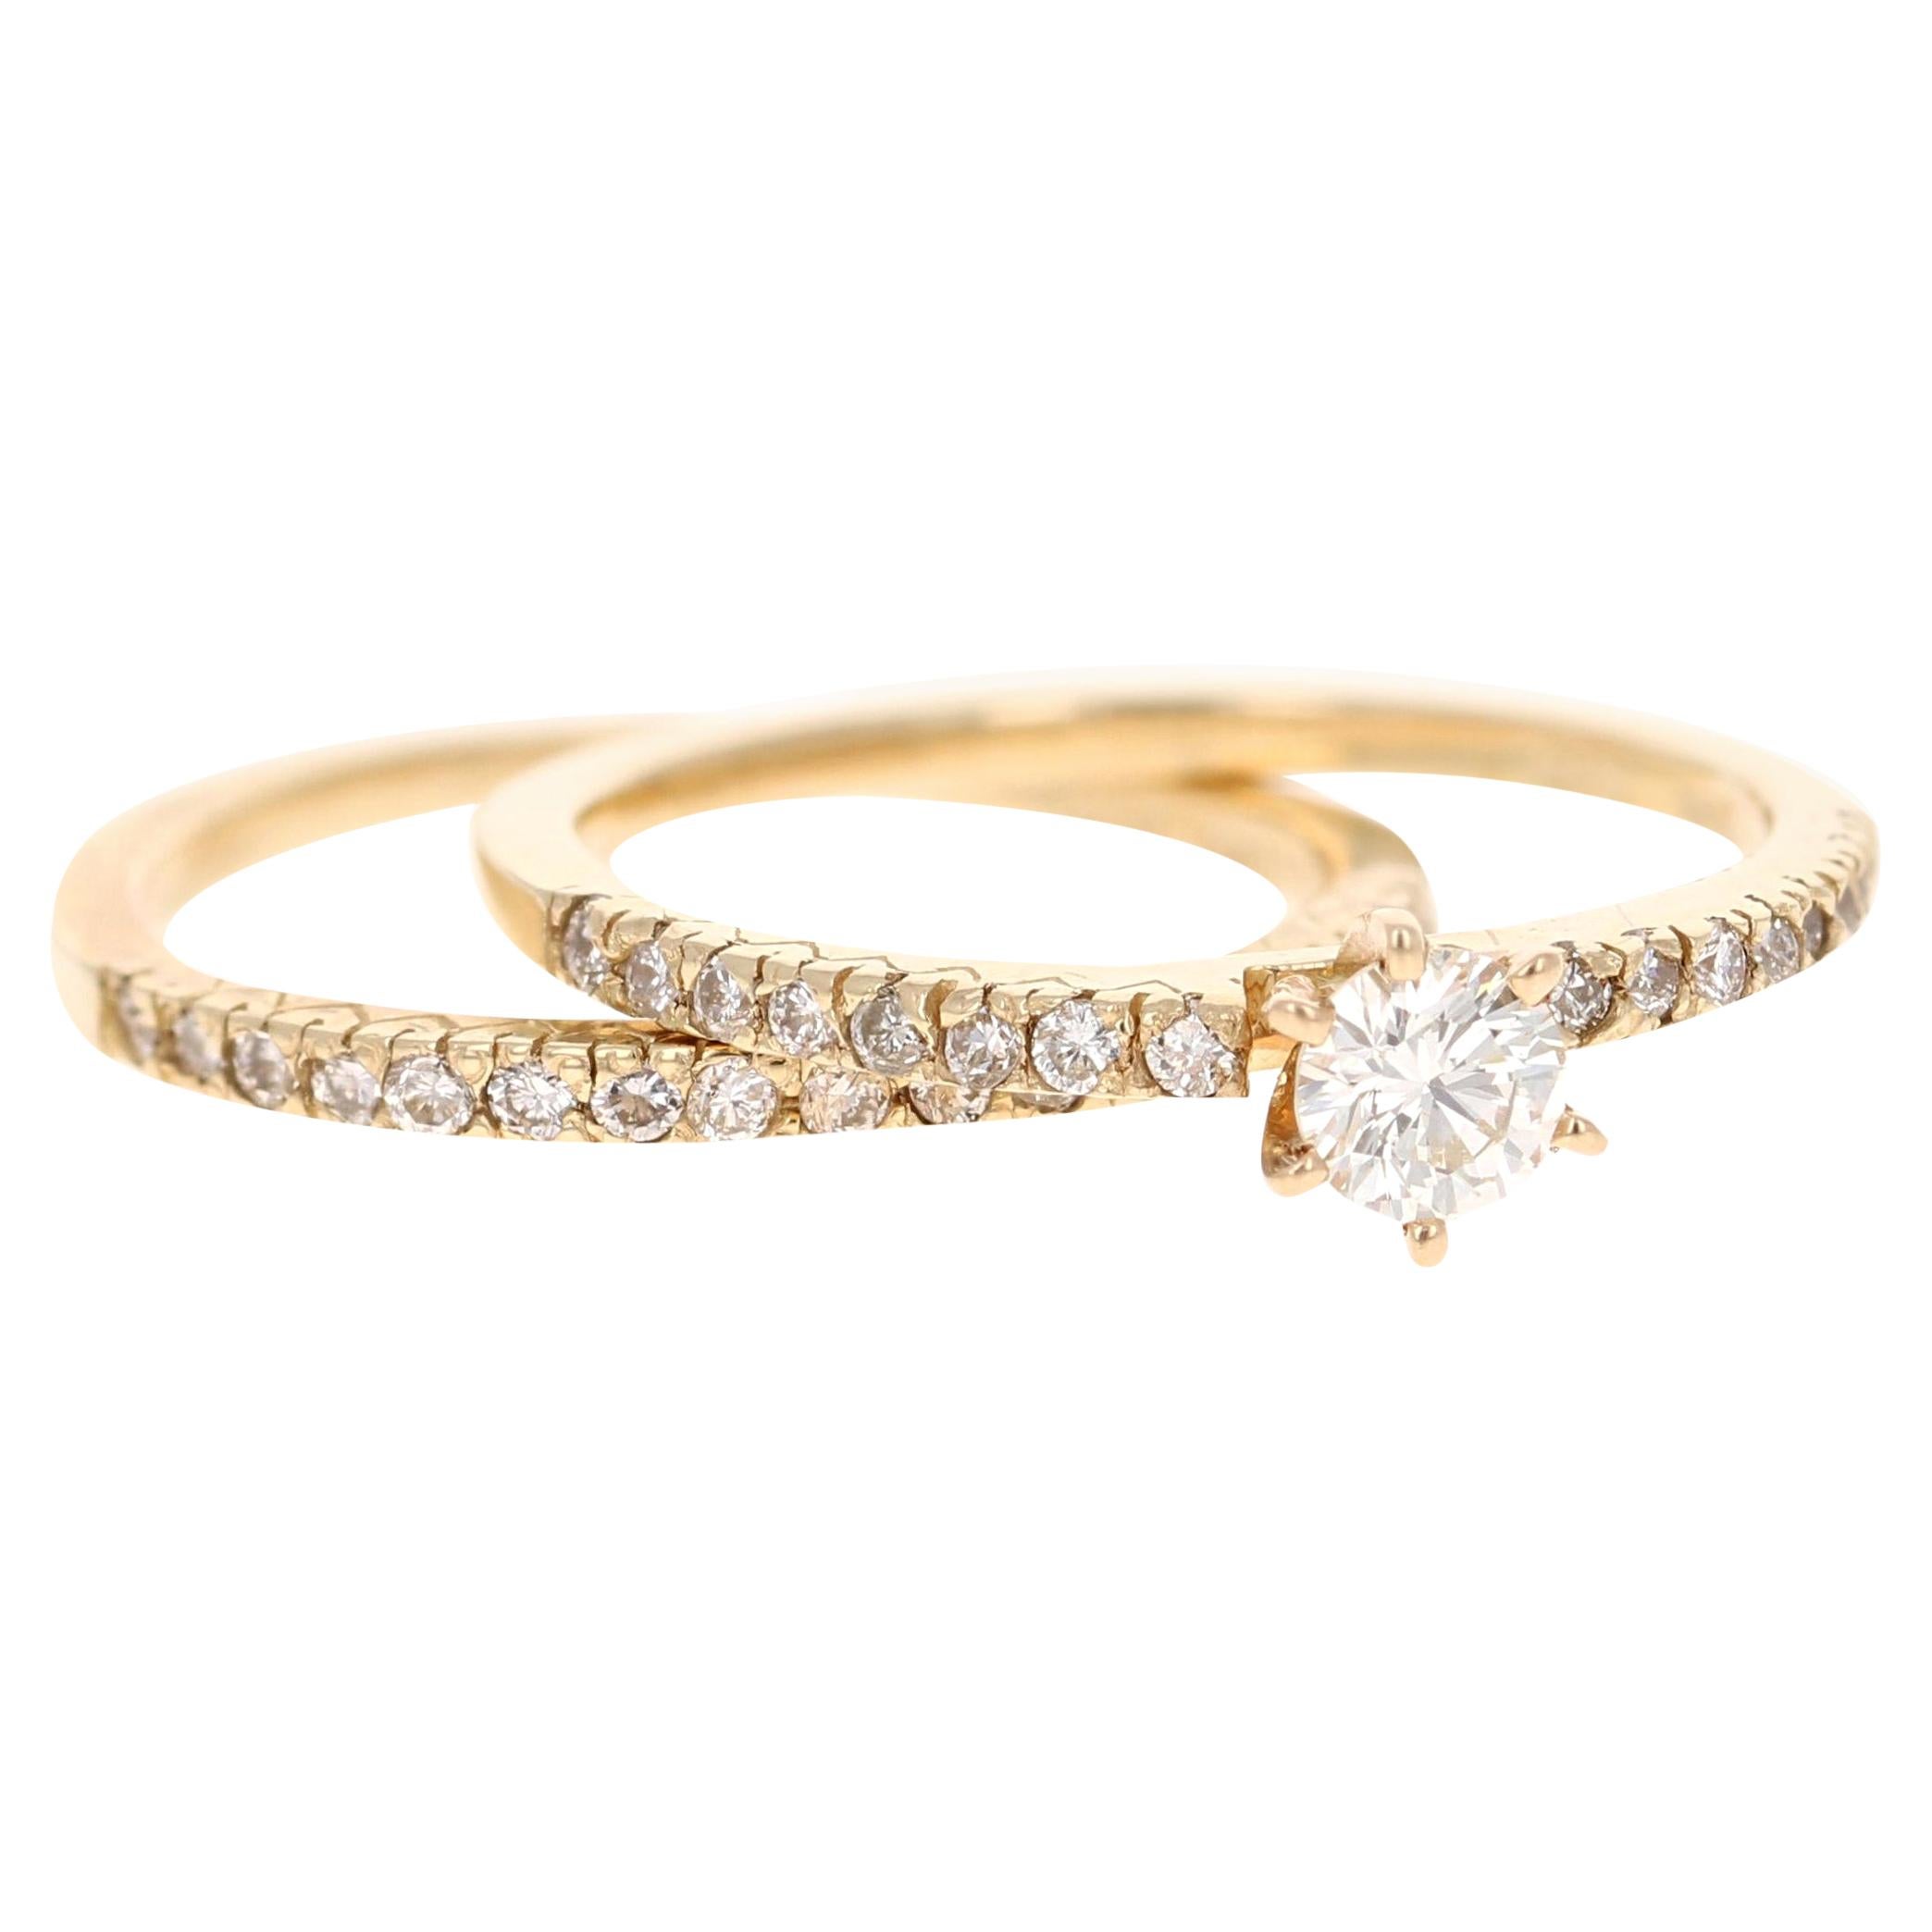 Parure de mariage en or jaune 14 carats avec diamants de 0,62 carat